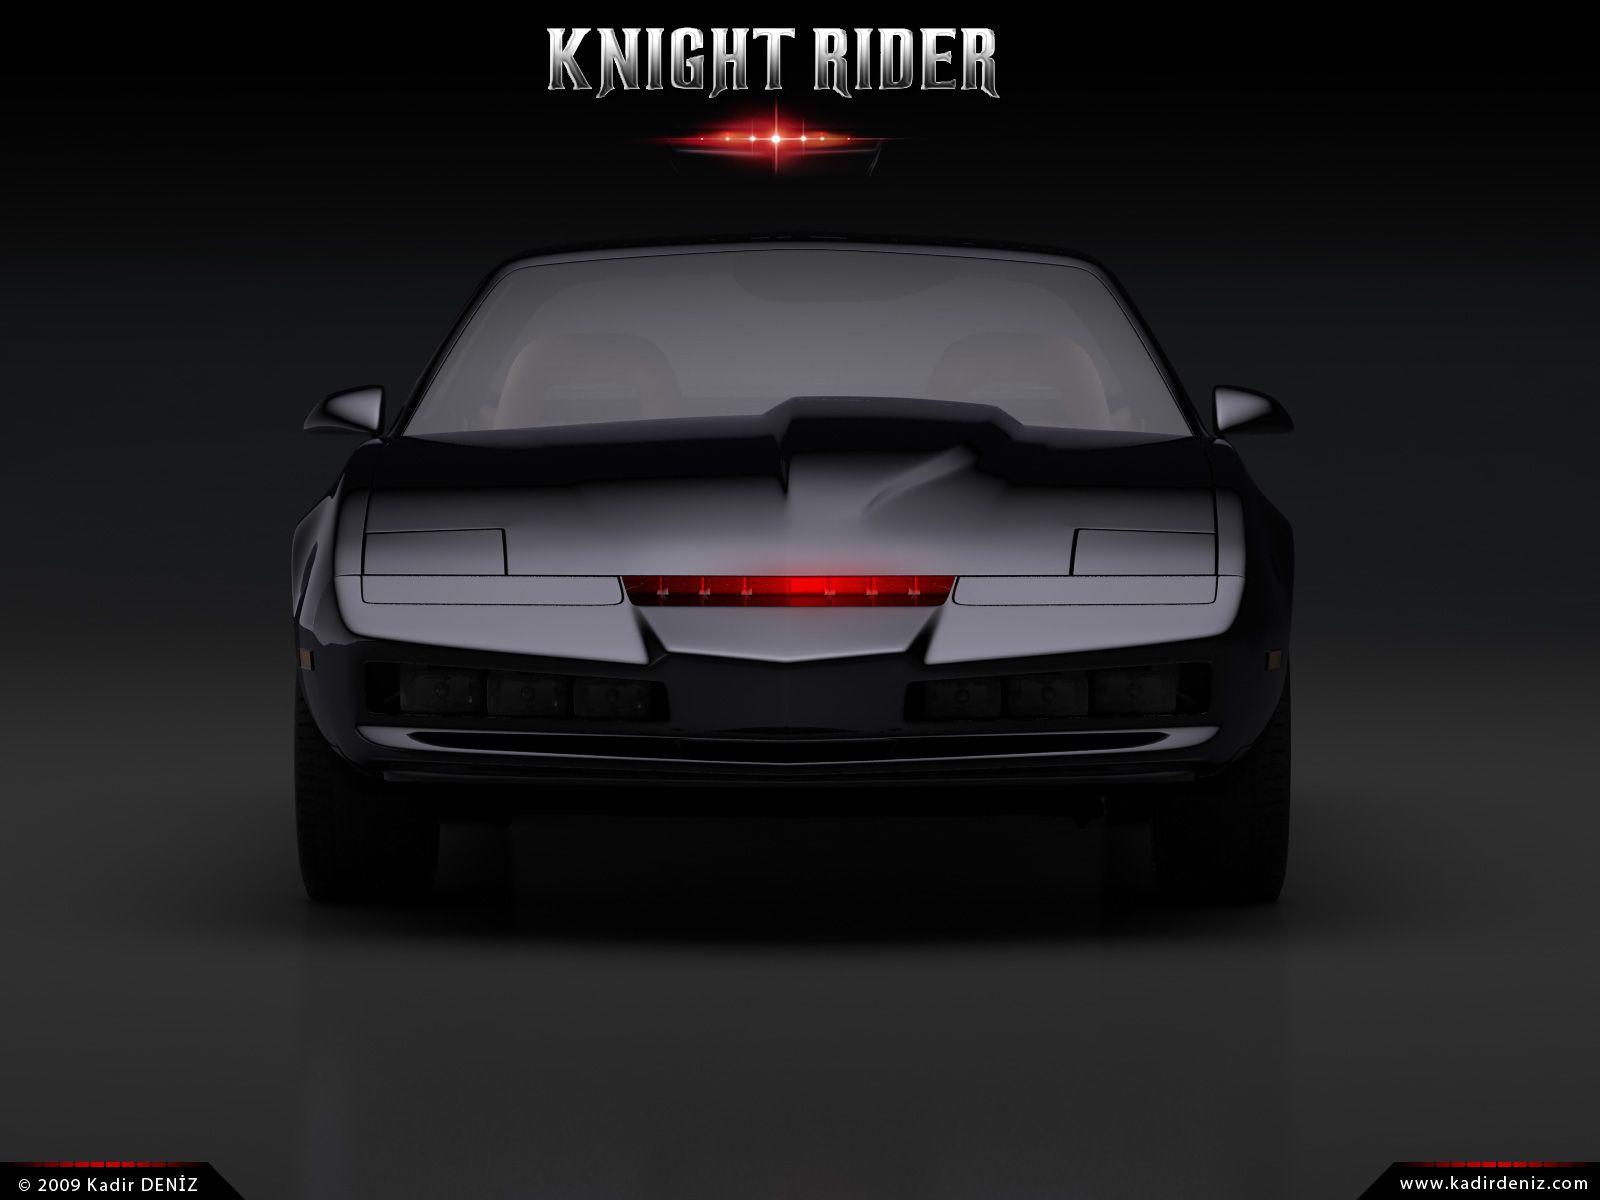 KITT- Huge Knight Rider fan. Sent away to be part of the fan club